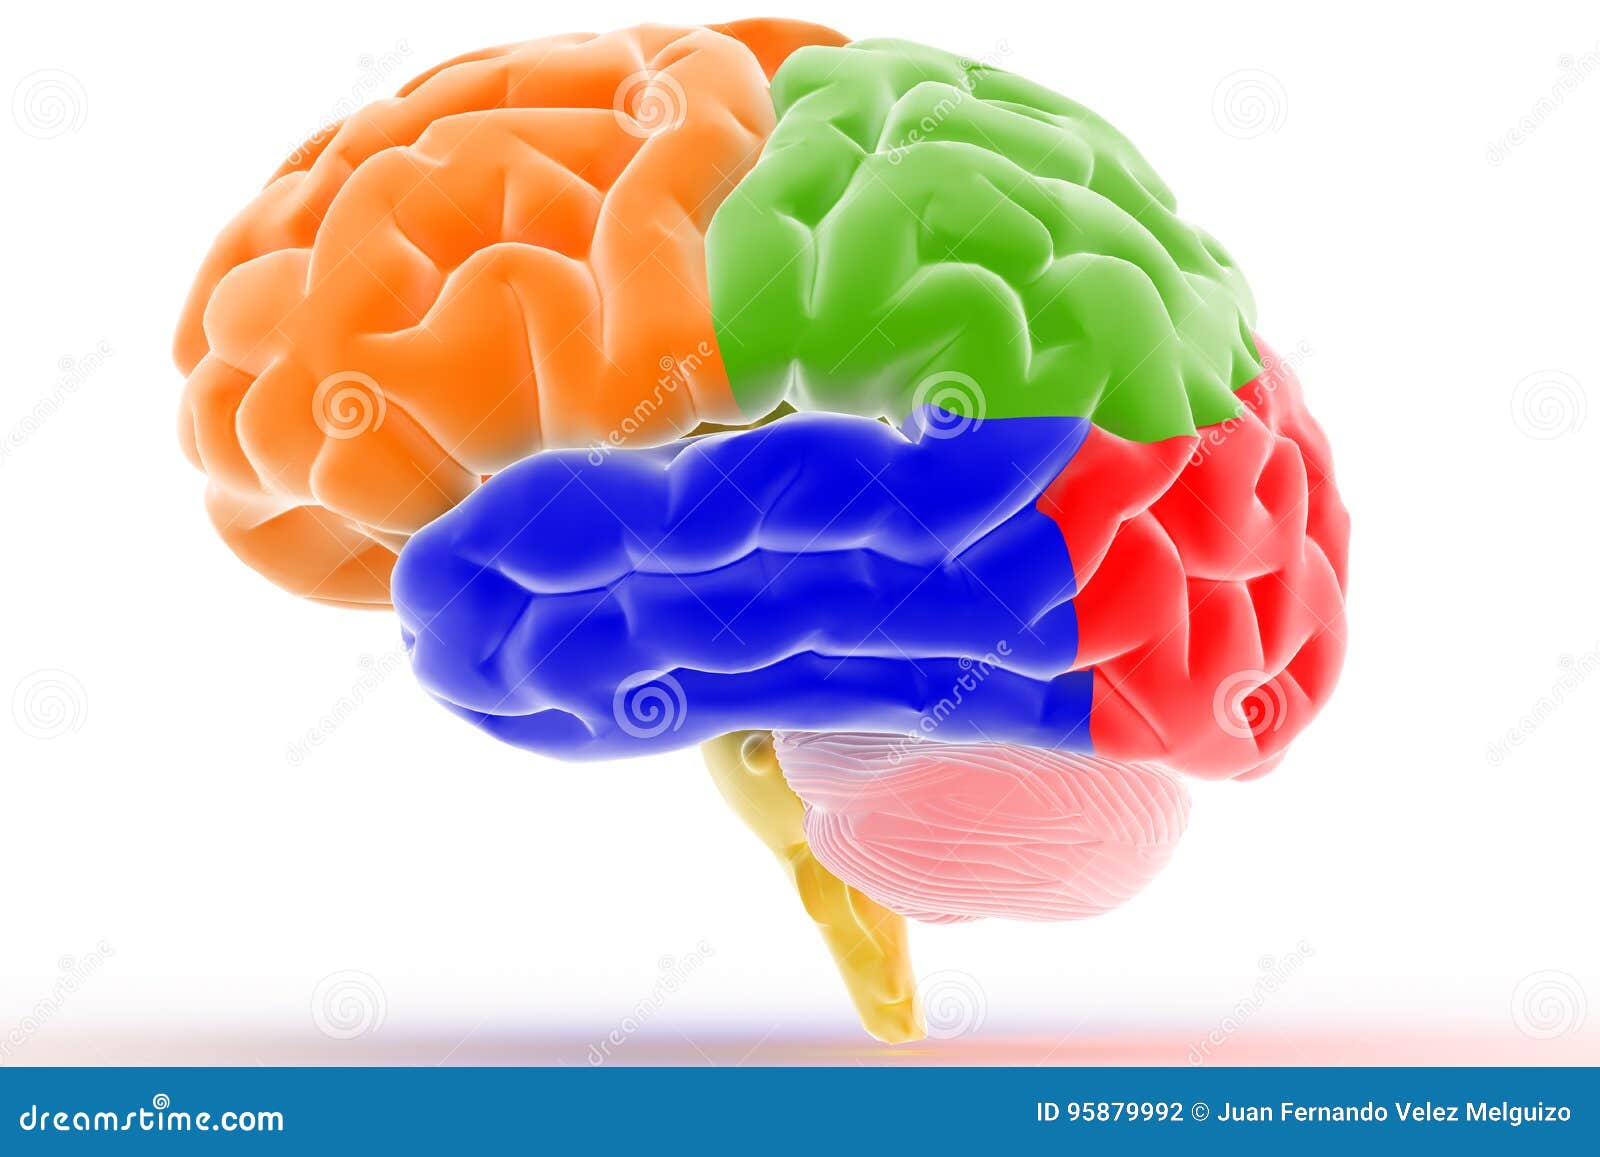 colorful brain